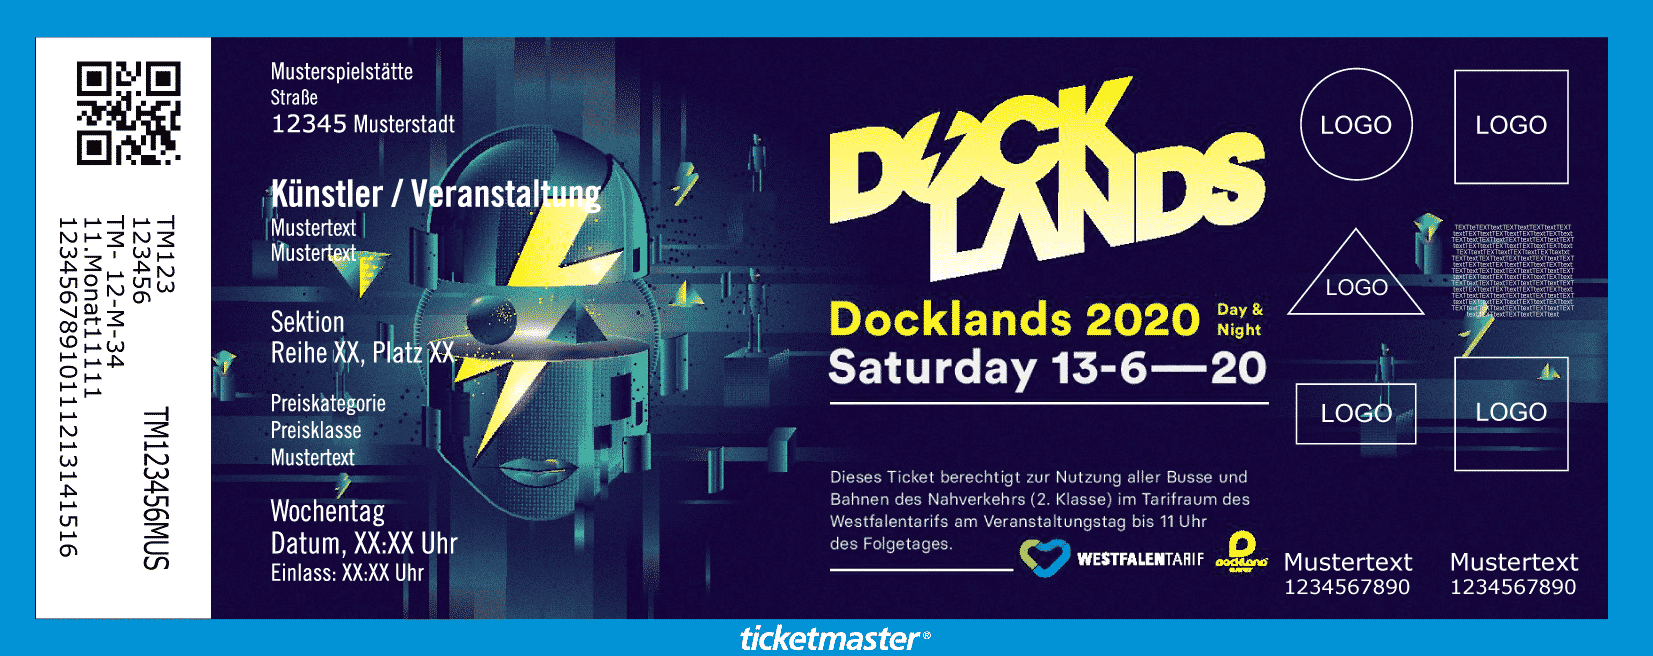 Docklands Münster Festival 2020